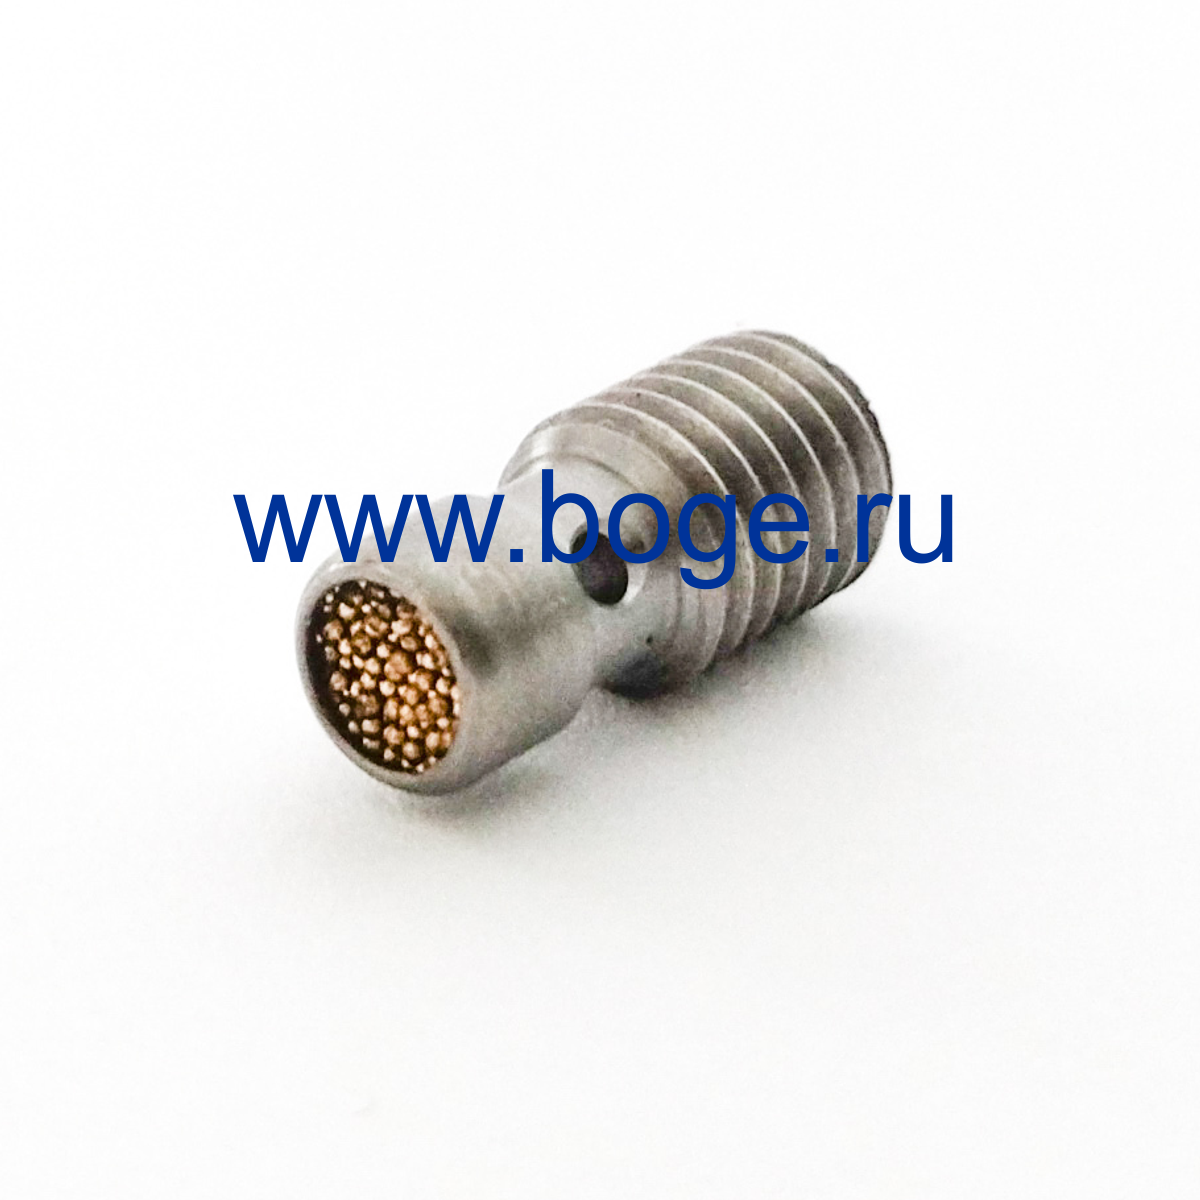 Фильтр металлокерамический грязевой Boge 552001300P